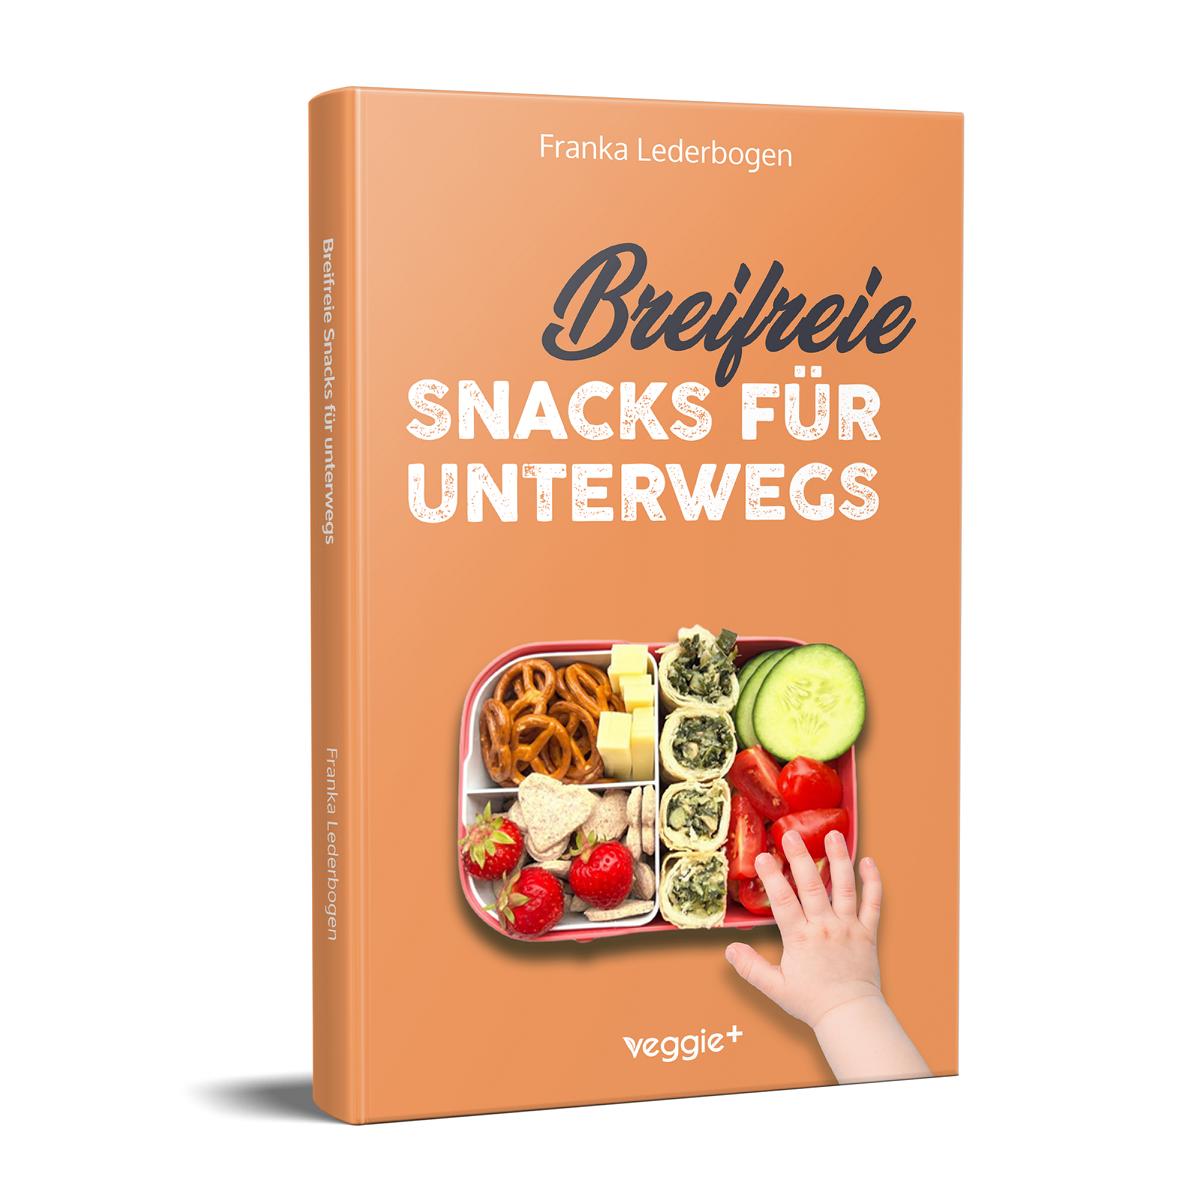 Breifreie Snacks für unterwegs: Das große Kochbuch mit gesunden Beikost-Rezepten und breifreien Snack-Ideen speziell für Babys und Kleinkinder von Franka Lederbogen im veggie + Verlag